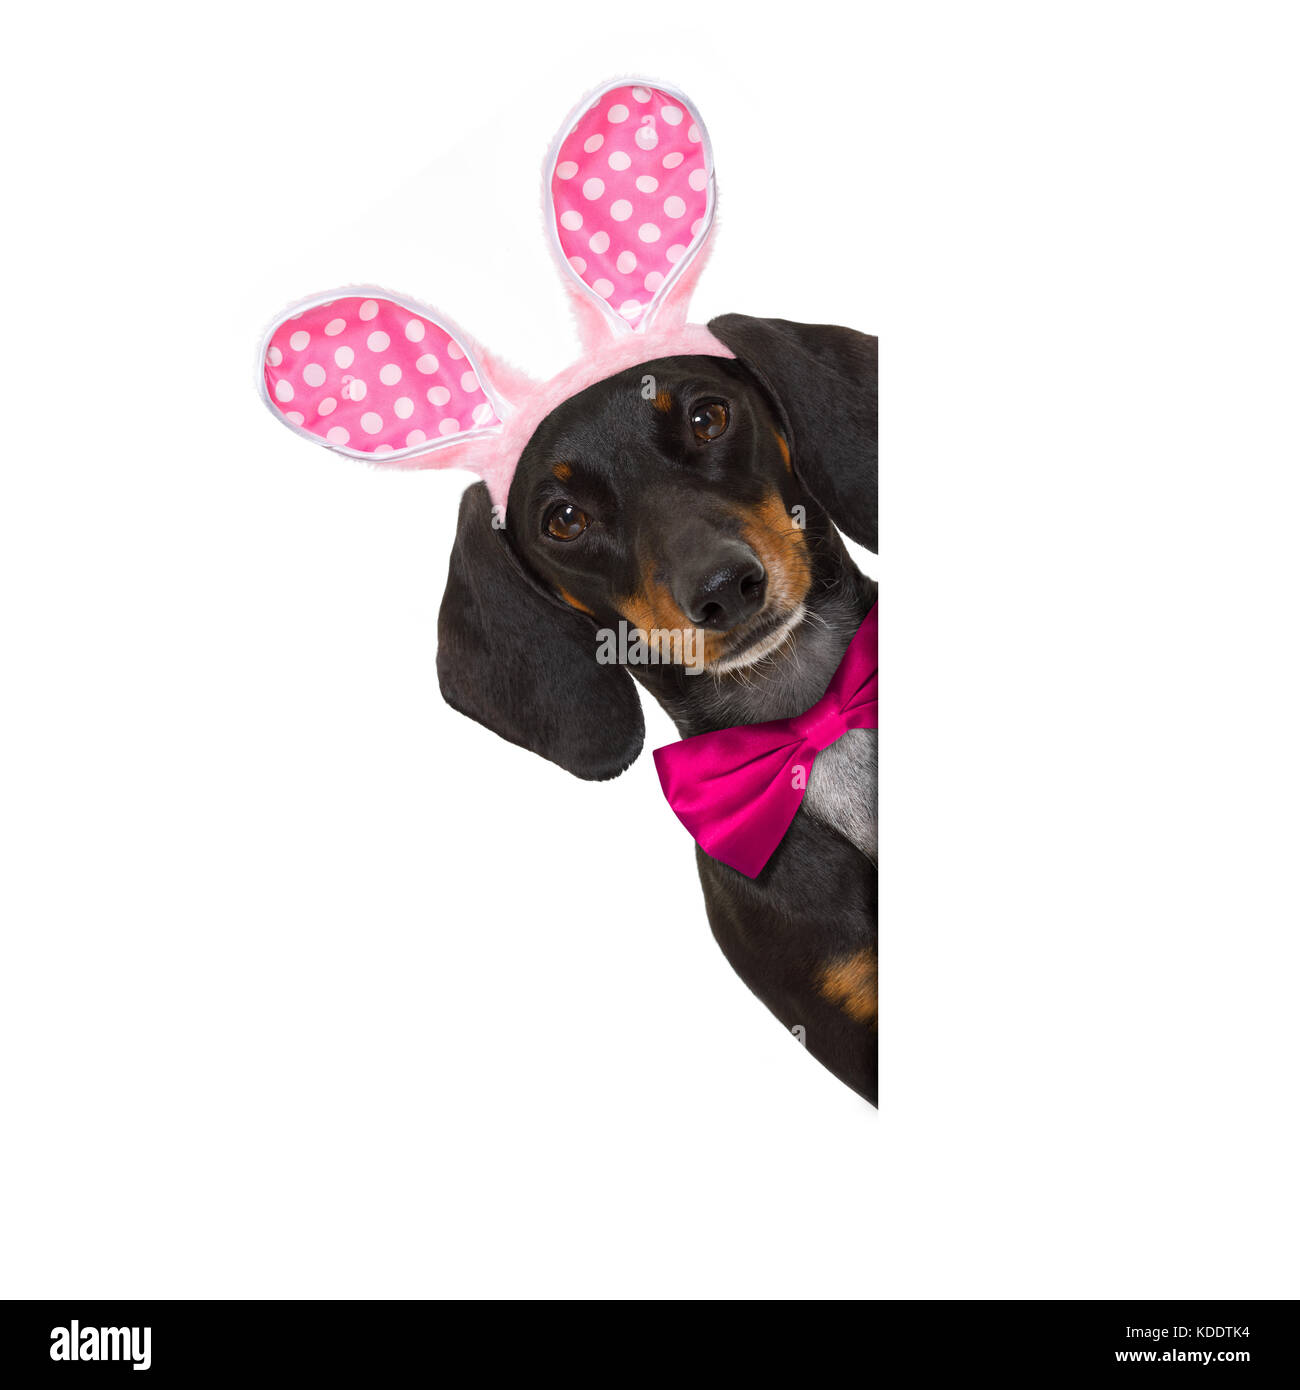 Dackel wurst Hund mit Bunny Ostern Ohren und eine rosa Krawatte, hinter  einem leeren Banner, Plakat oder Tafel, auf weißem Hintergrund  Stockfotografie - Alamy